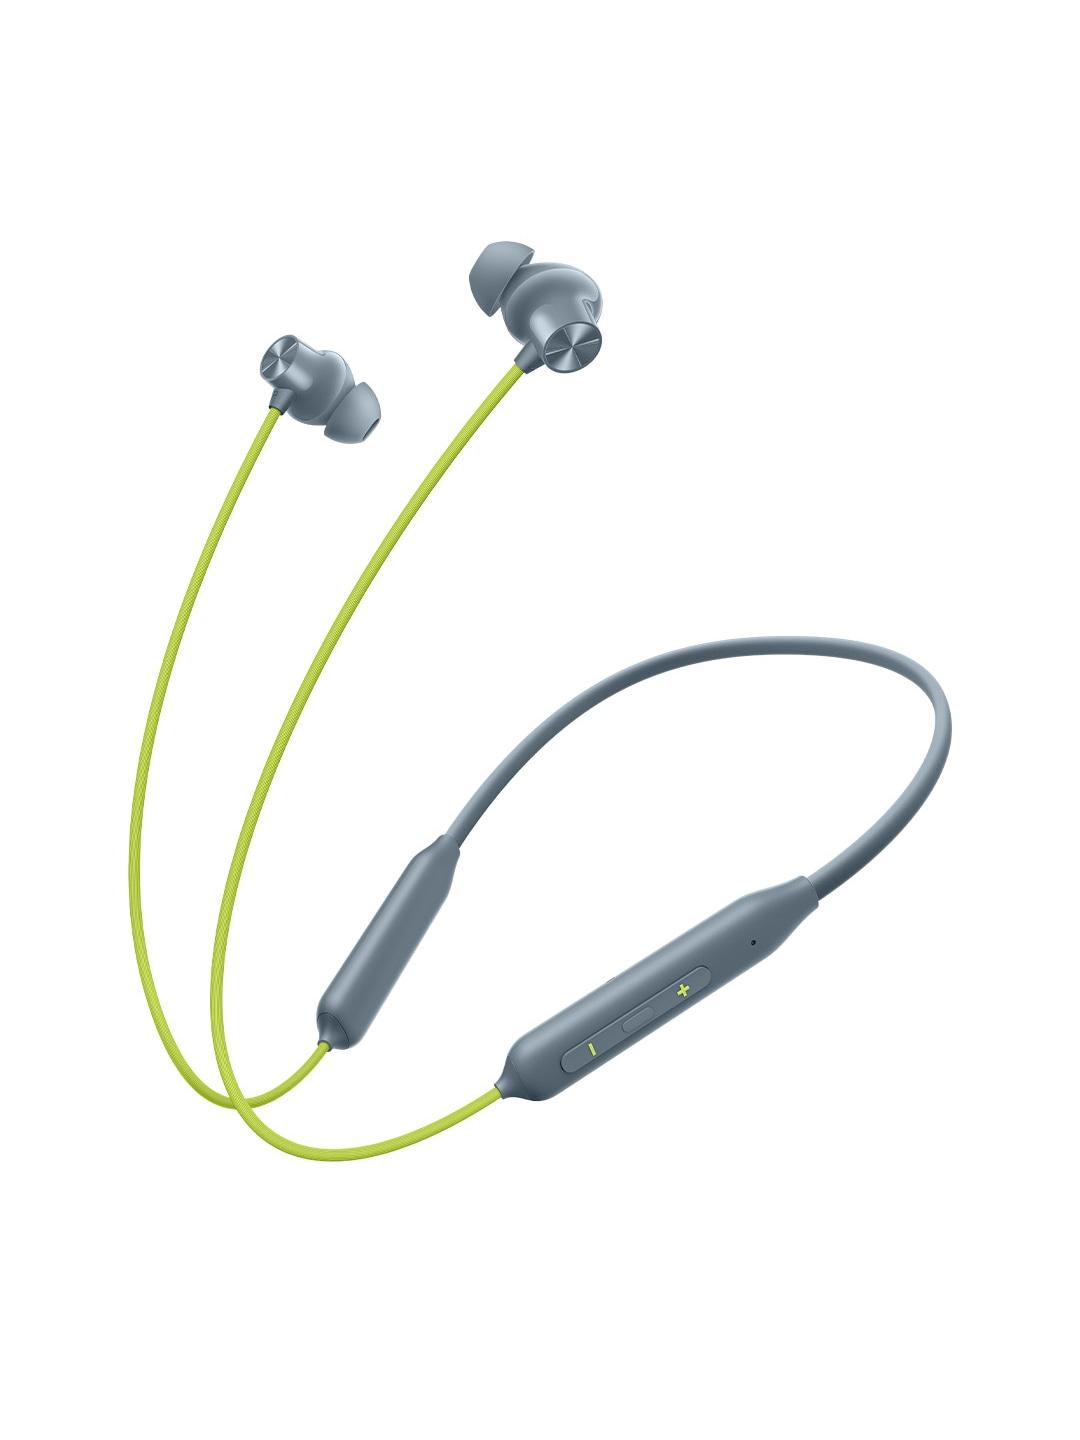 OnePlus Bullets Z2 Bluetooth Wireless in Ear Earphones with Mic